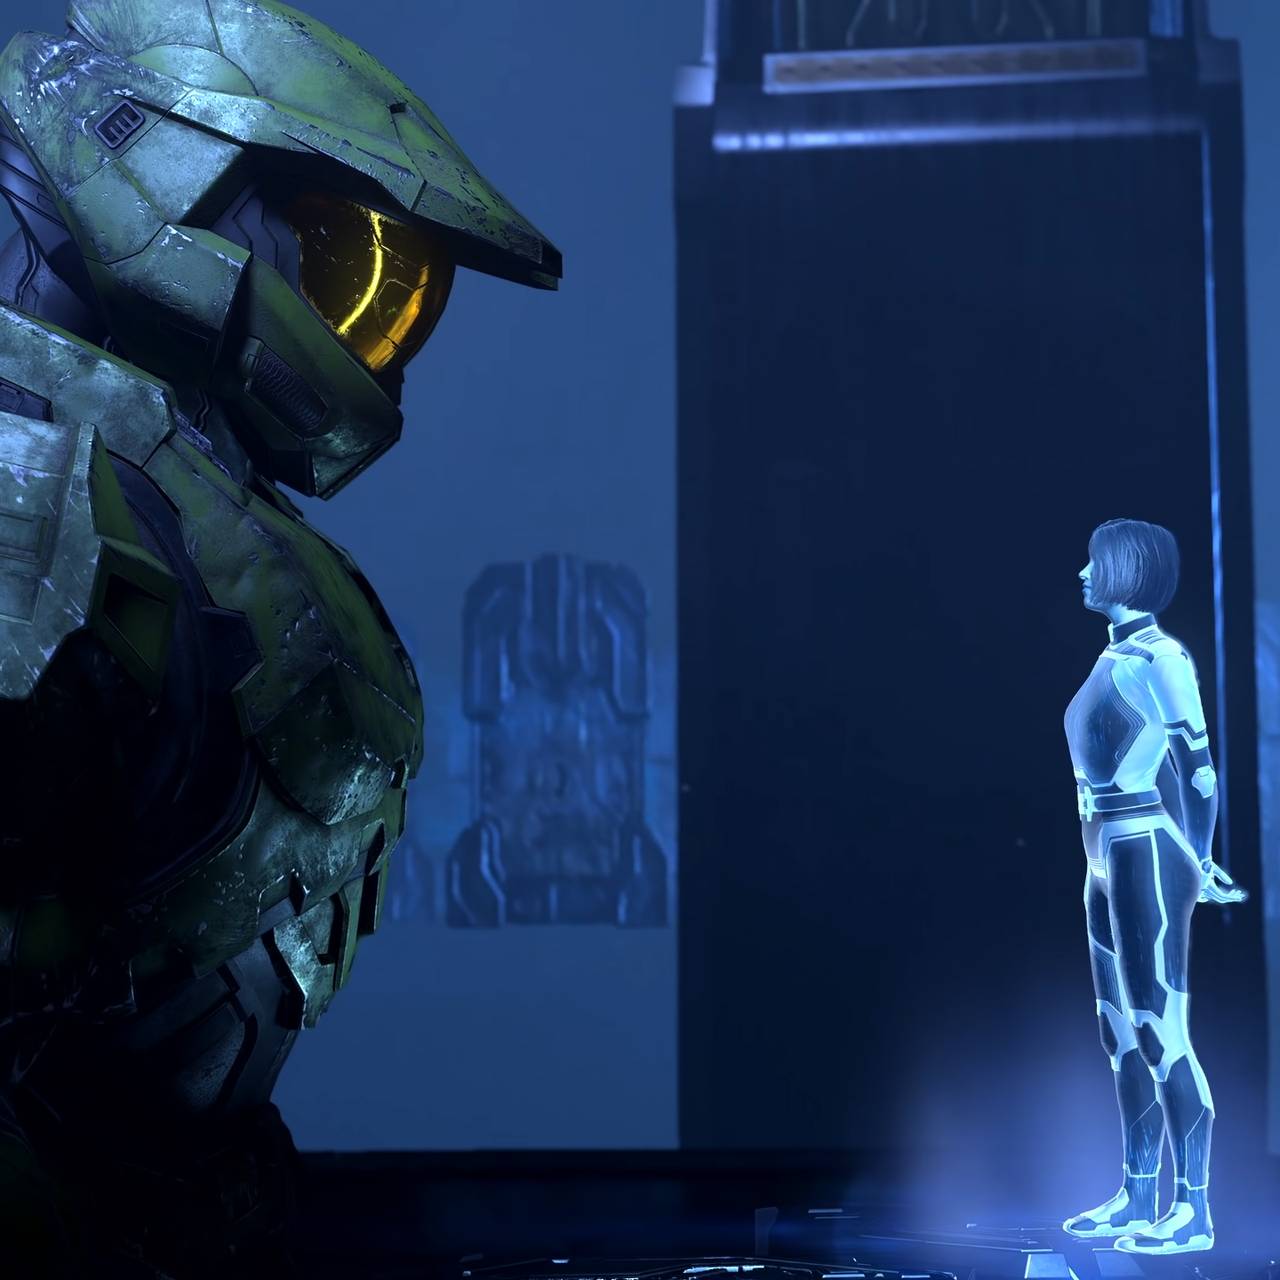 Il personaggio del gioco Master Chief guarda un personaggio circondato da un'aura luminosa: una nuova intelligenza artificiale.  Dal gioco 